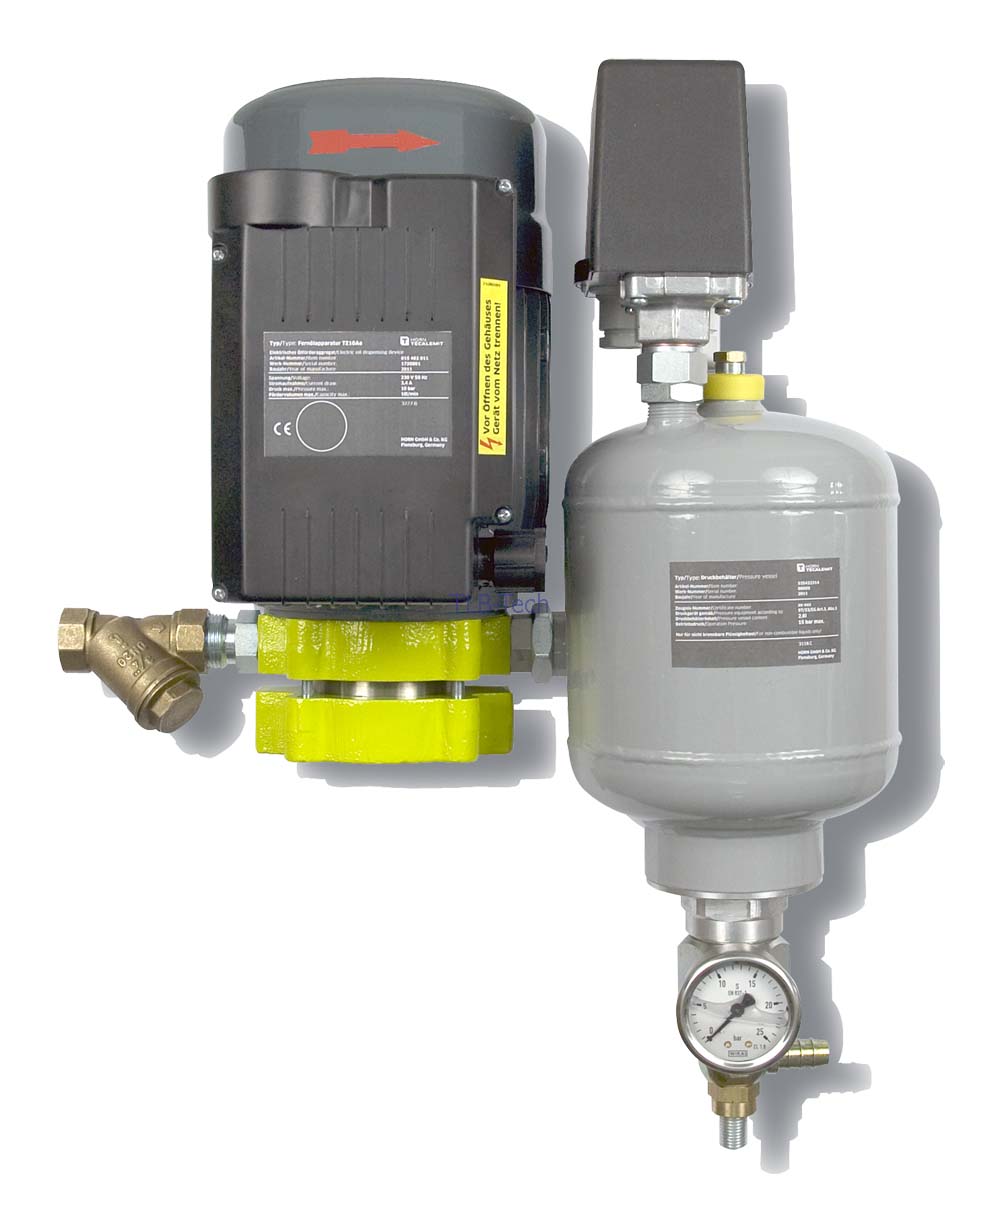 Elektropumpe für Frischöl Fernölapparatur TZ10Ae, eichfähig  Membrandruckregler, Ölpumpen, Pumpen